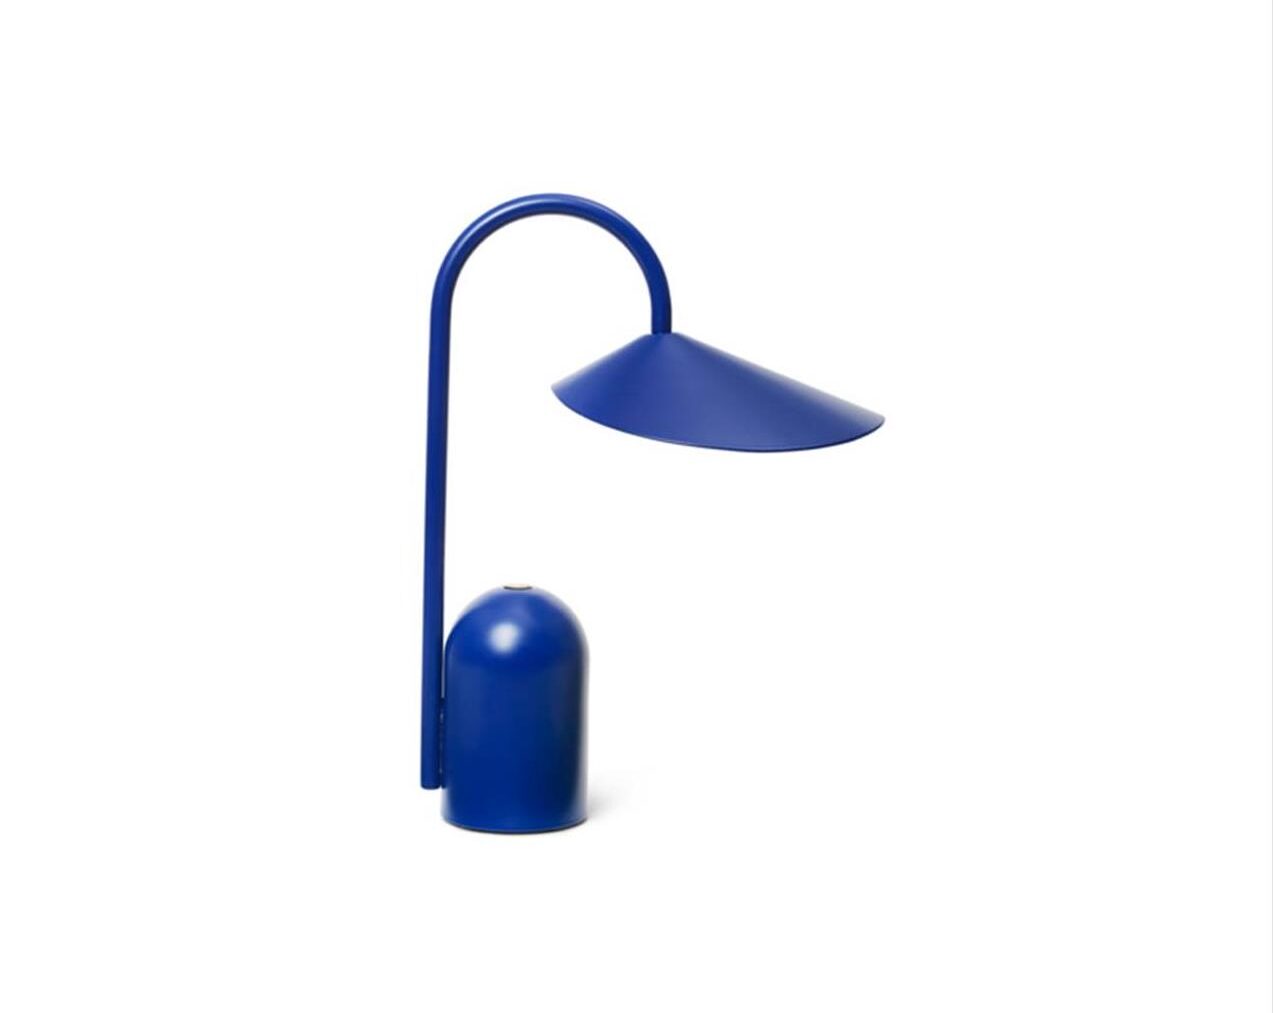 Arum-Portable-Lamp-Bright-Blue